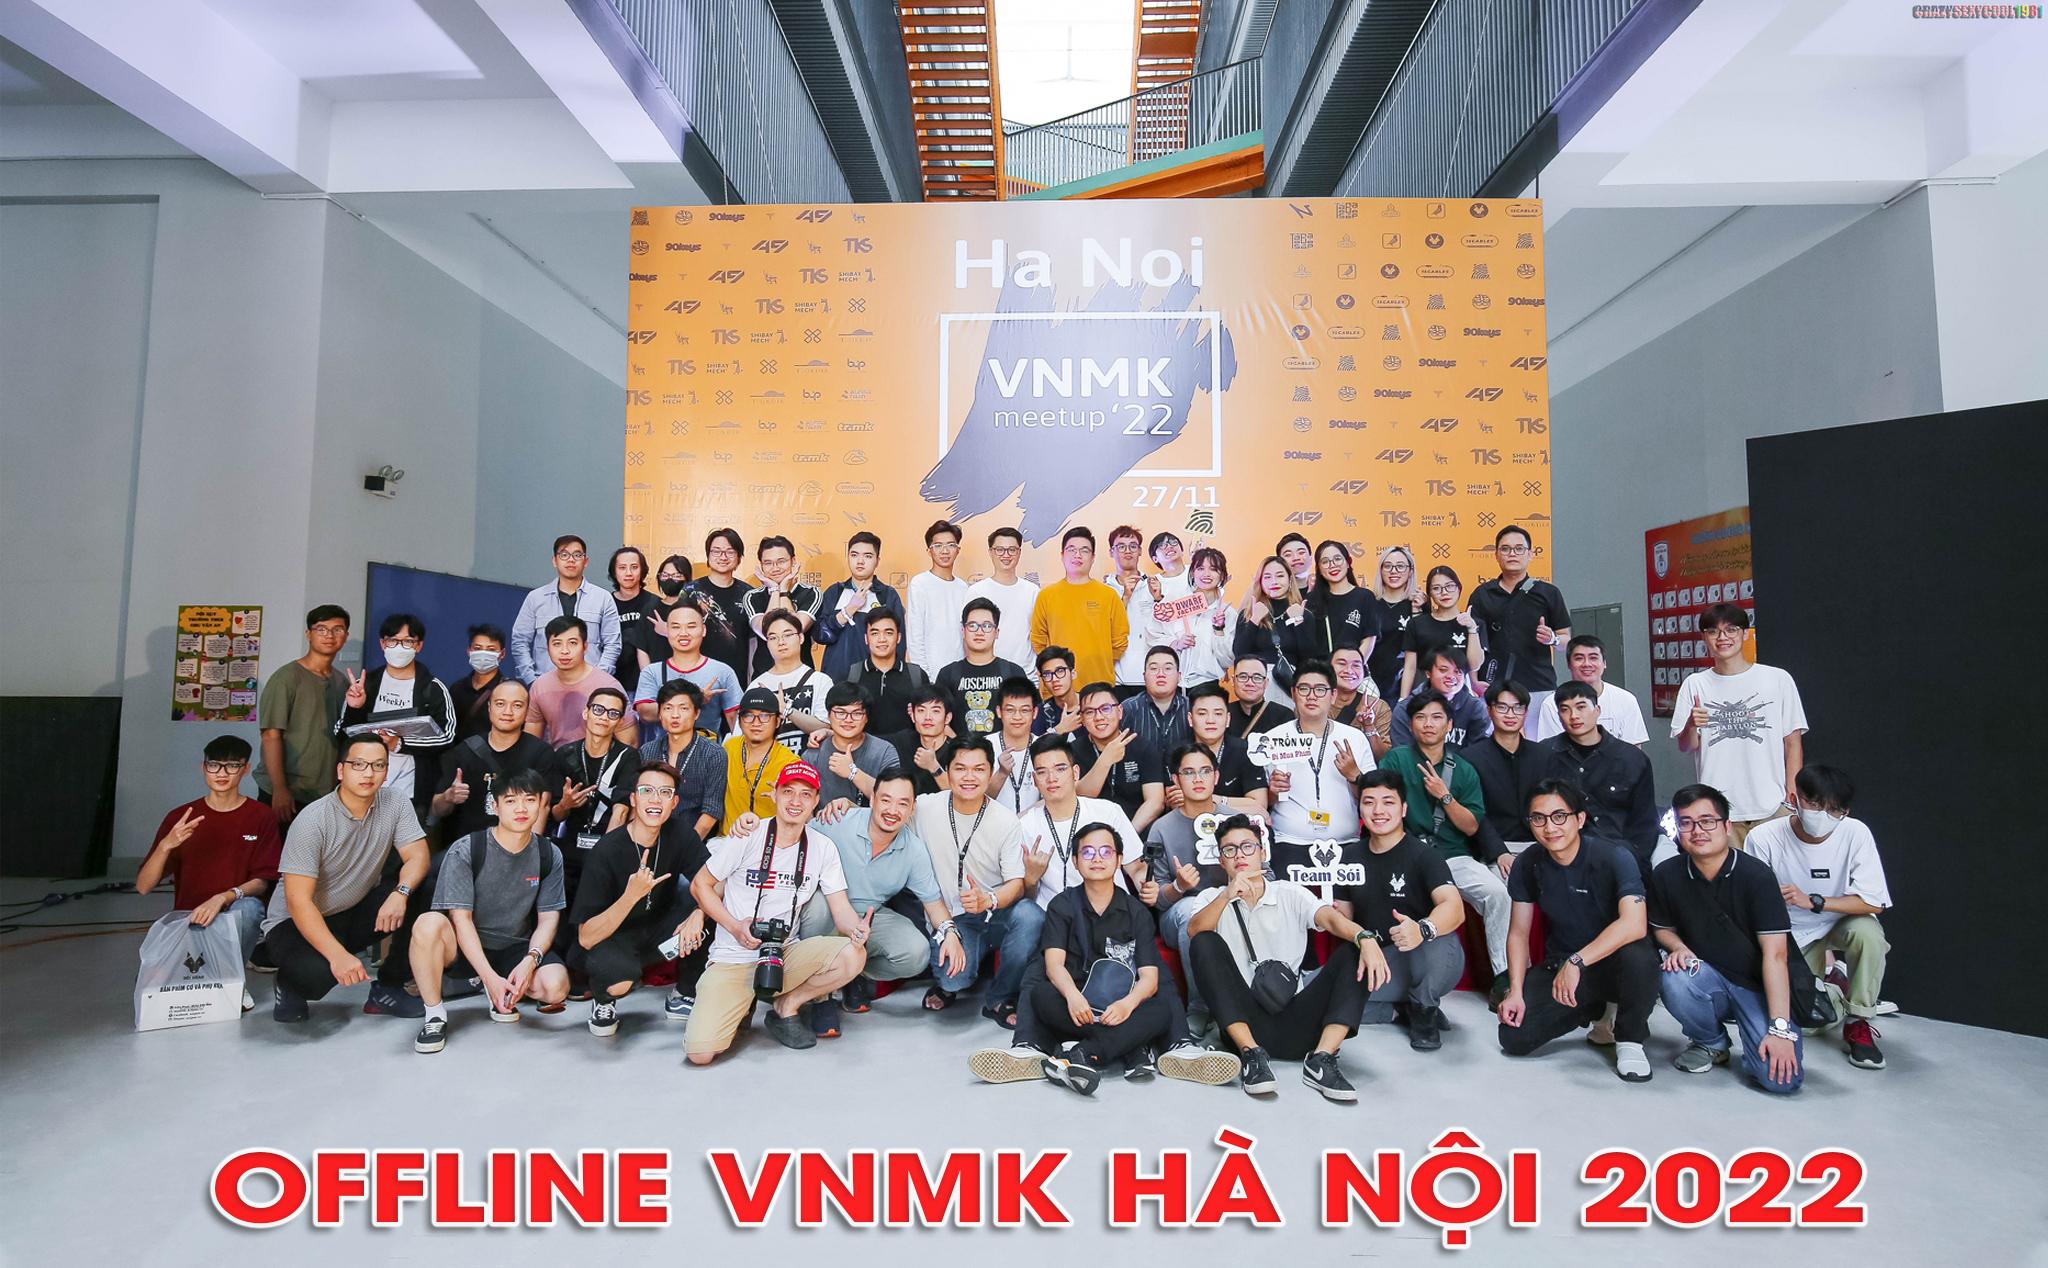 Hình ảnh buổi offline VNMK 2022 tại Hà Nội